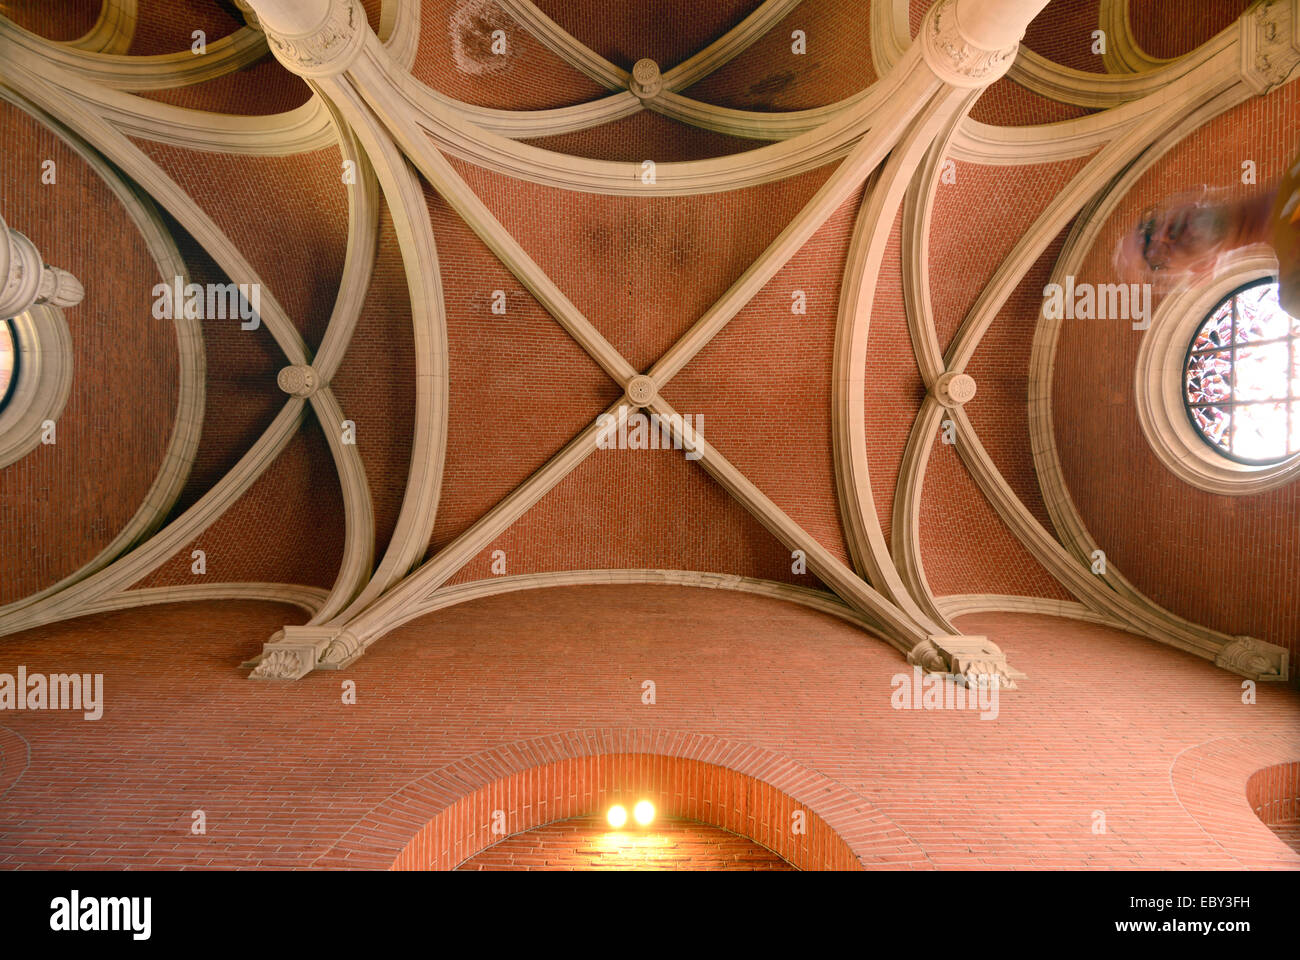 Plafond gothique nervurée du Musée des Augustins Musée dans l'ancien monastère des Augustins TOULOUSE Haute-Garonne France Banque D'Images